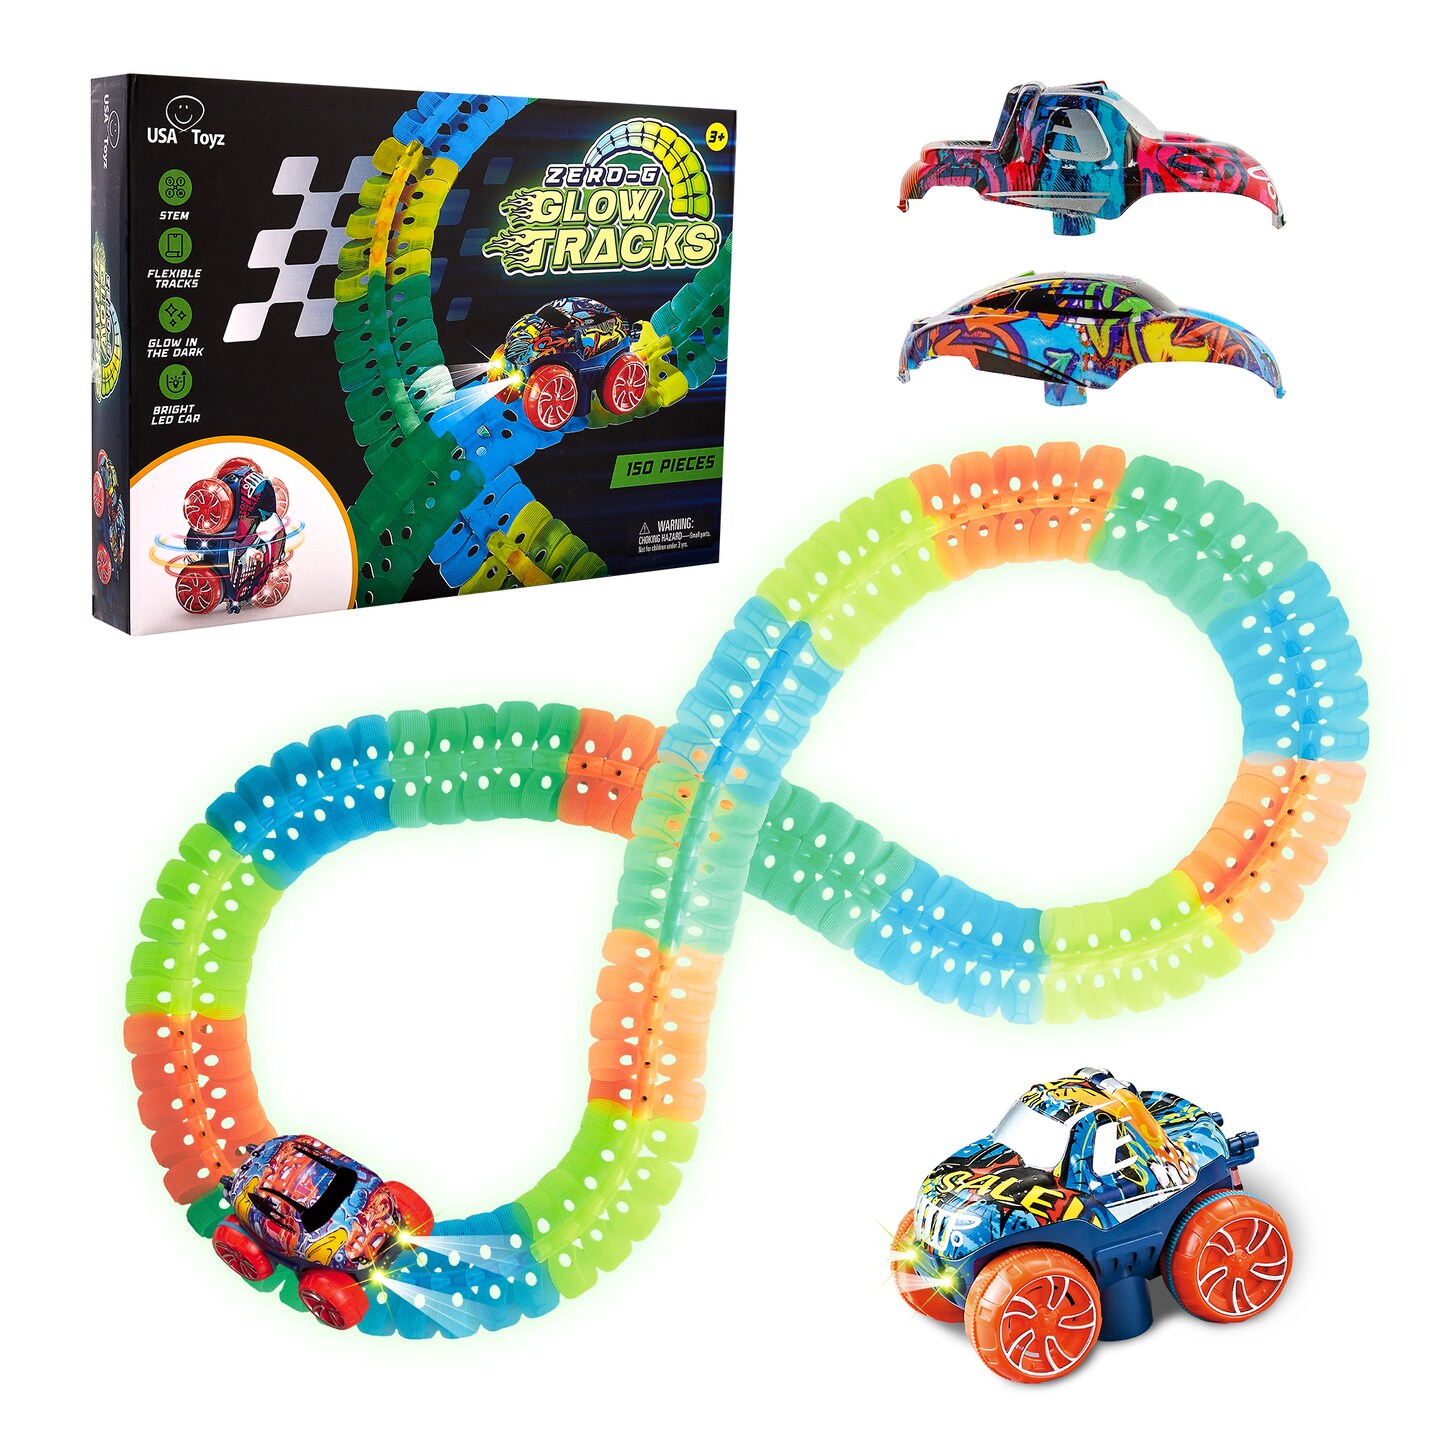 USA Toyz Zero-G Glow Race Track for Kids- 150pcs